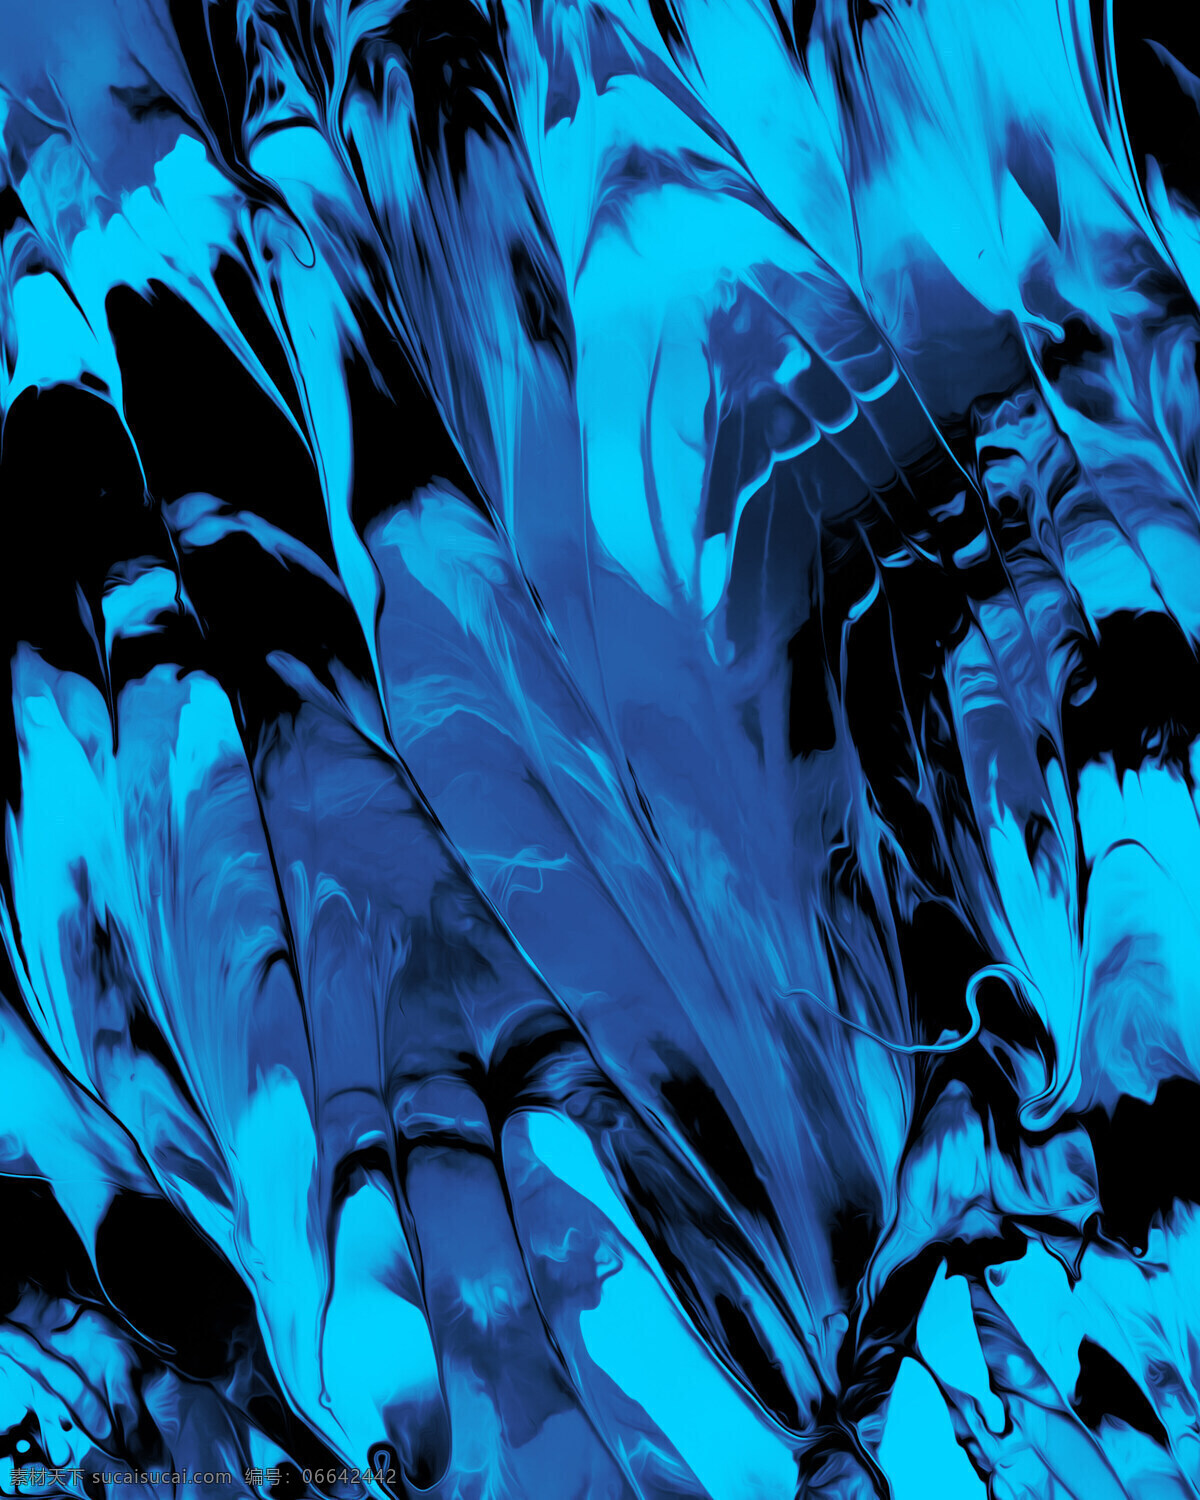 蓝色 绚丽 抽象 背景图片 蓝色背景 绚丽抽象 抽象背景 线条 油画纹理 液态流体 底纹边框 背景底纹